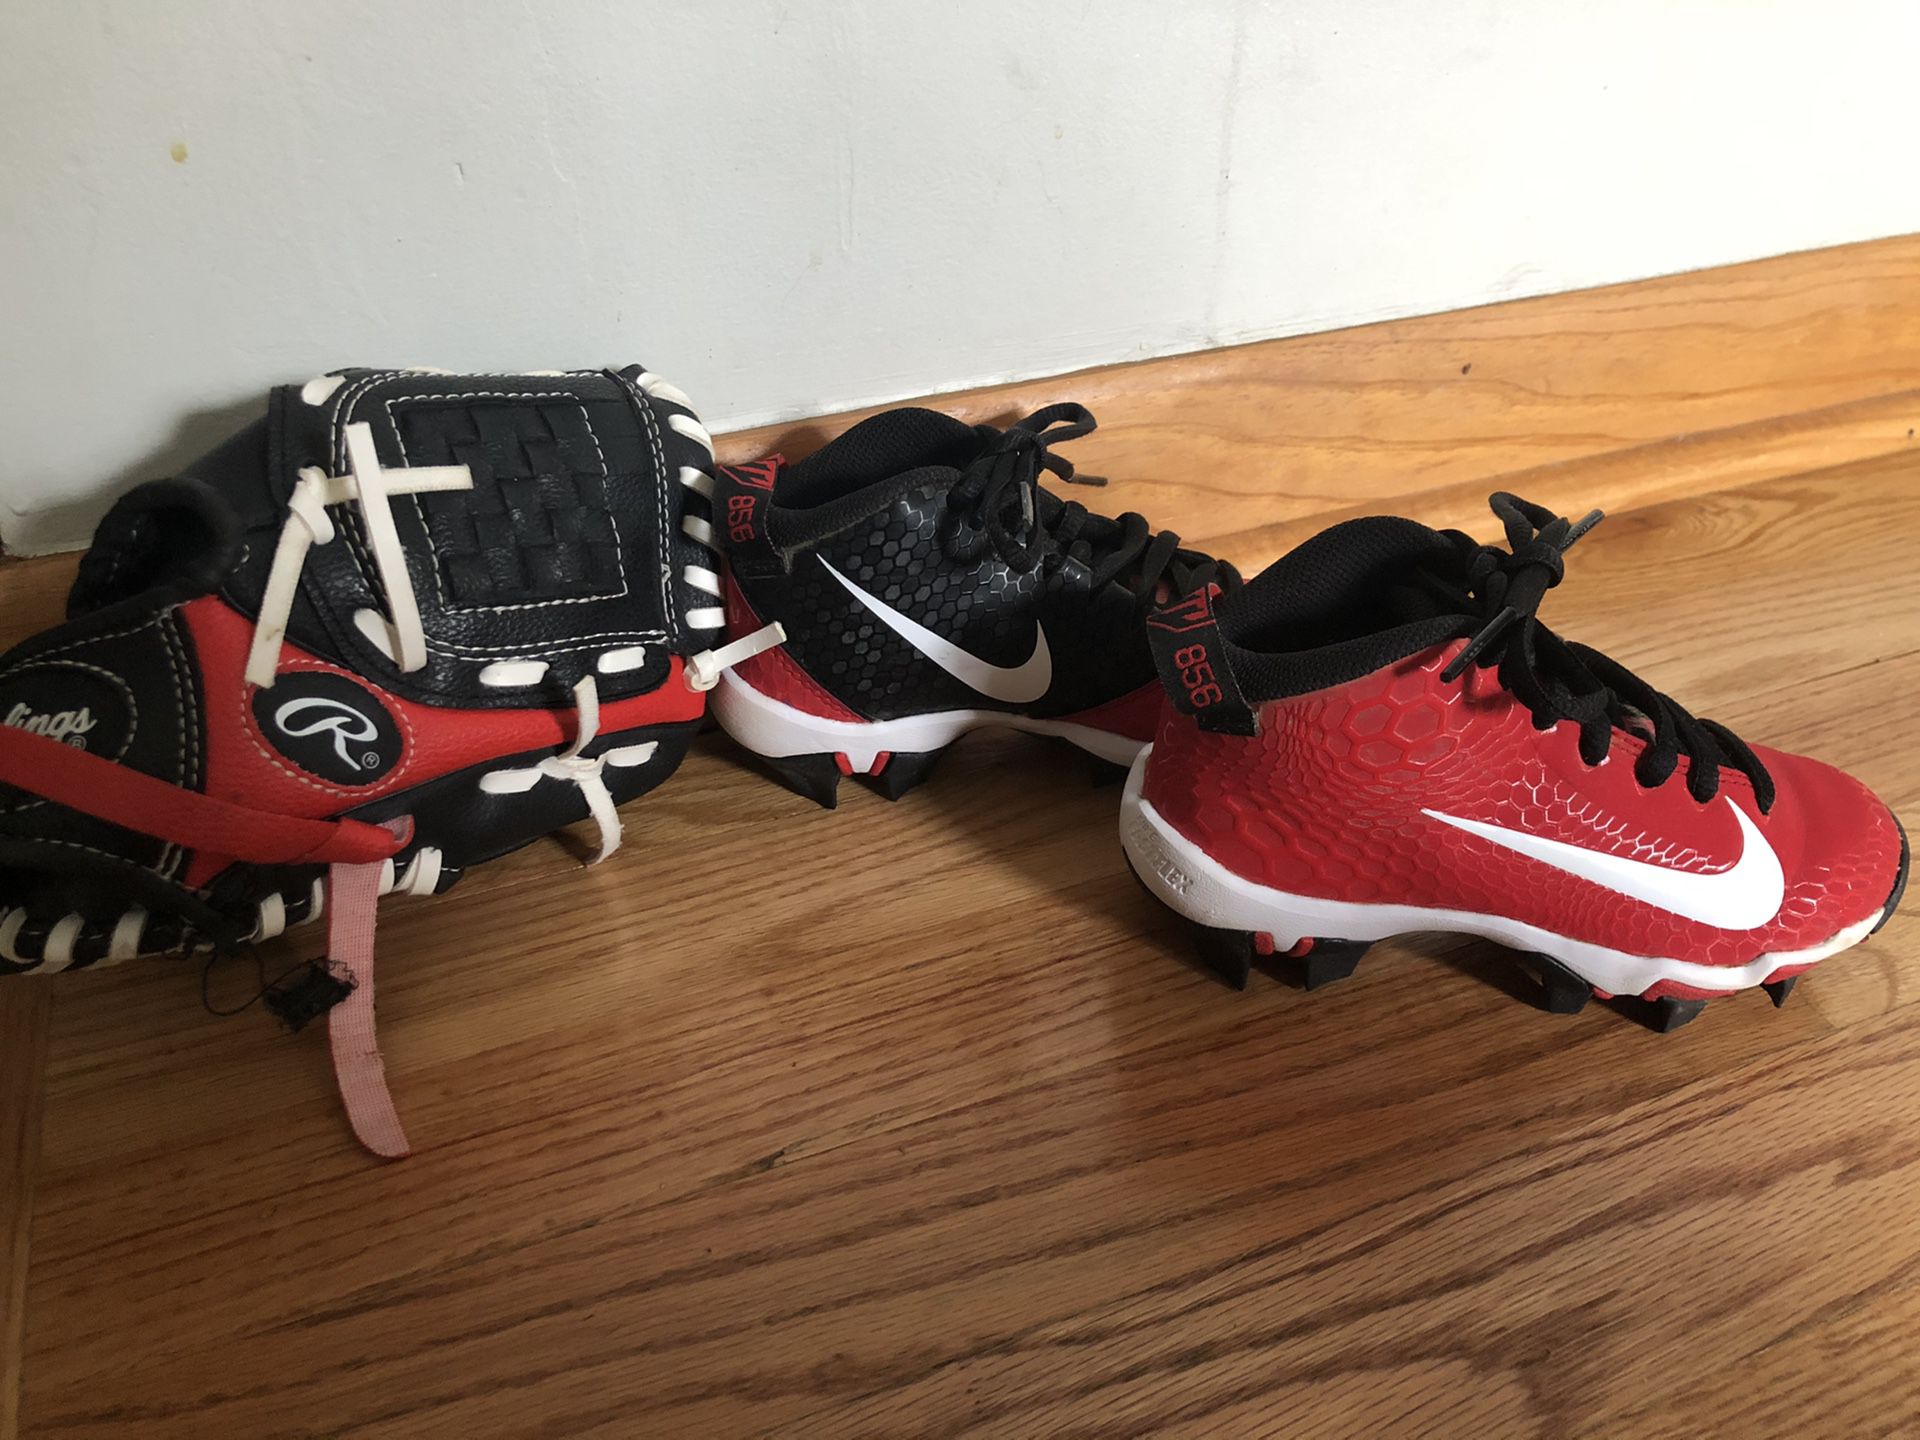 Nike Cleats and Rawlings Baseball Glove